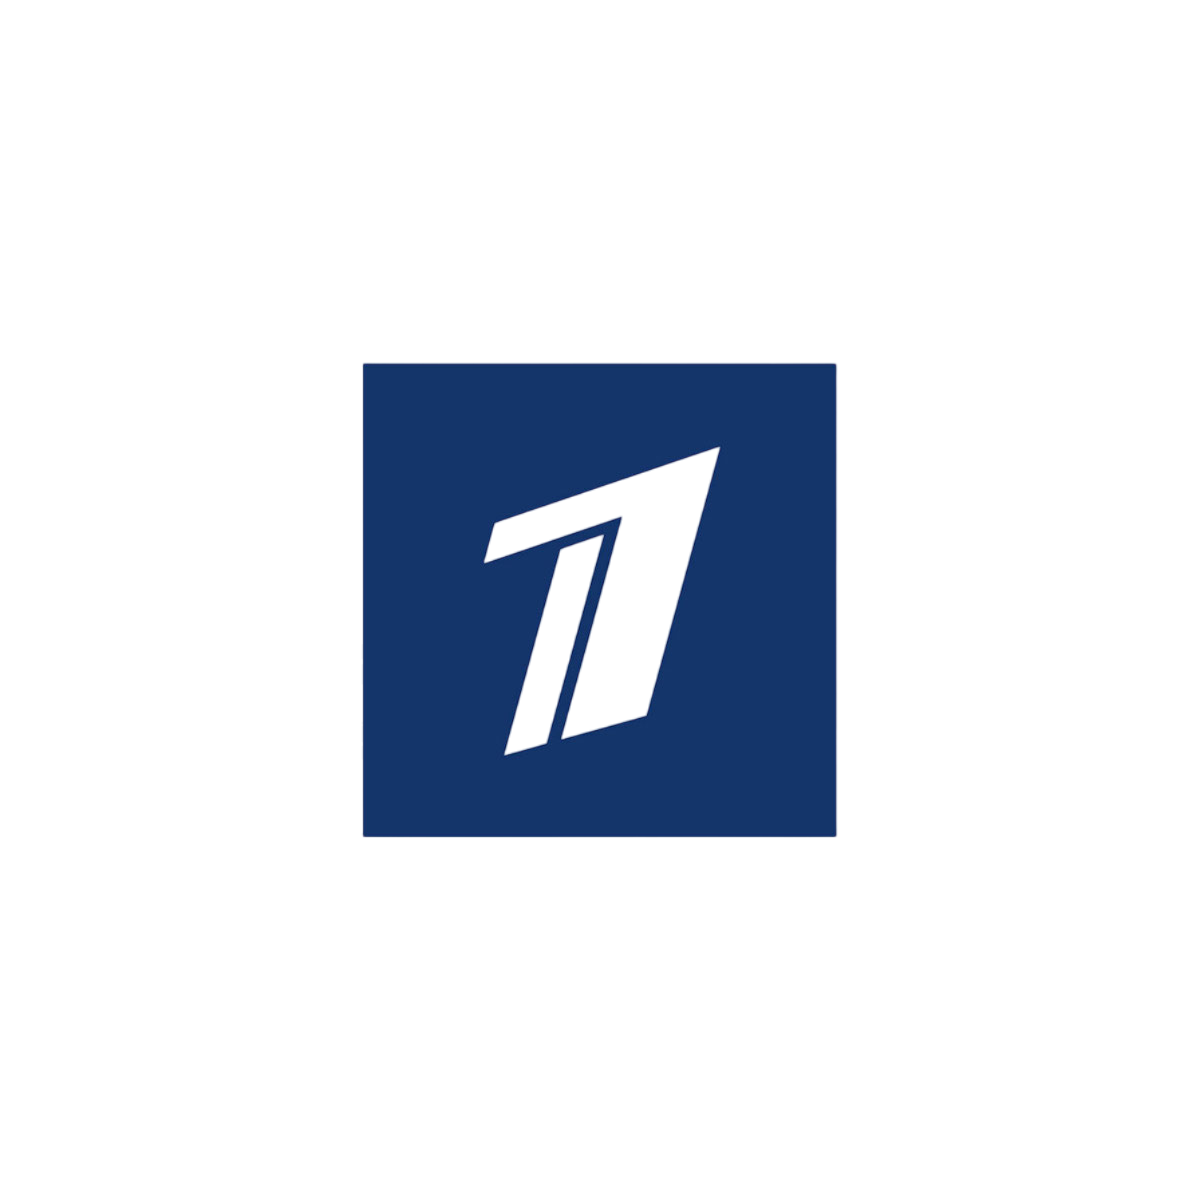 Первый канал. Лого первого канала. Канал логотип первый Кана. Телеканал первый канал. Https www 1tv ru shows